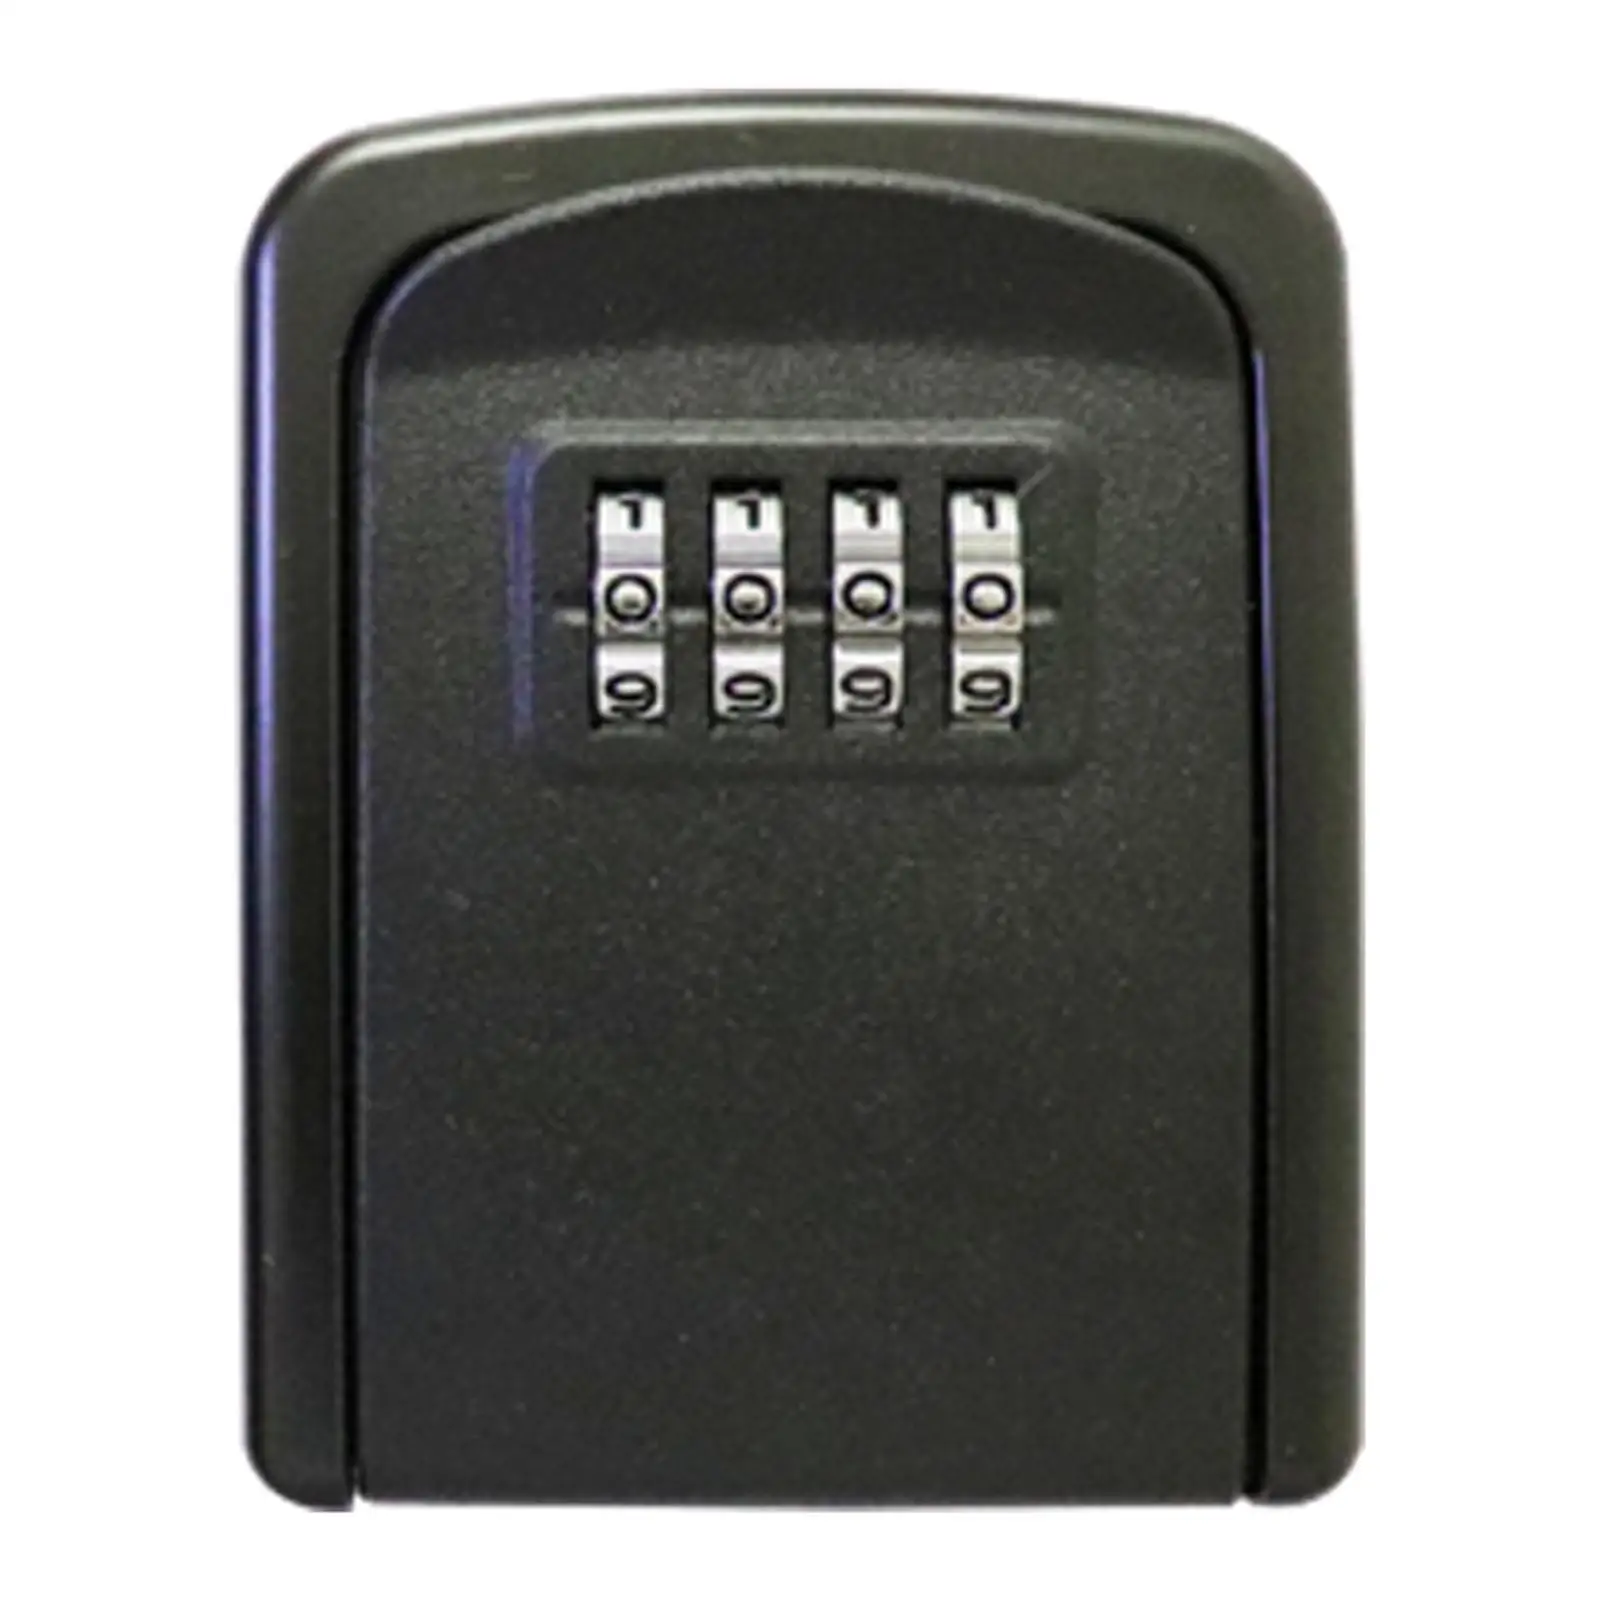 Outdoor Key Storage Lock Box 4 Digit Password Key Storage Case for Home Garage Indoor